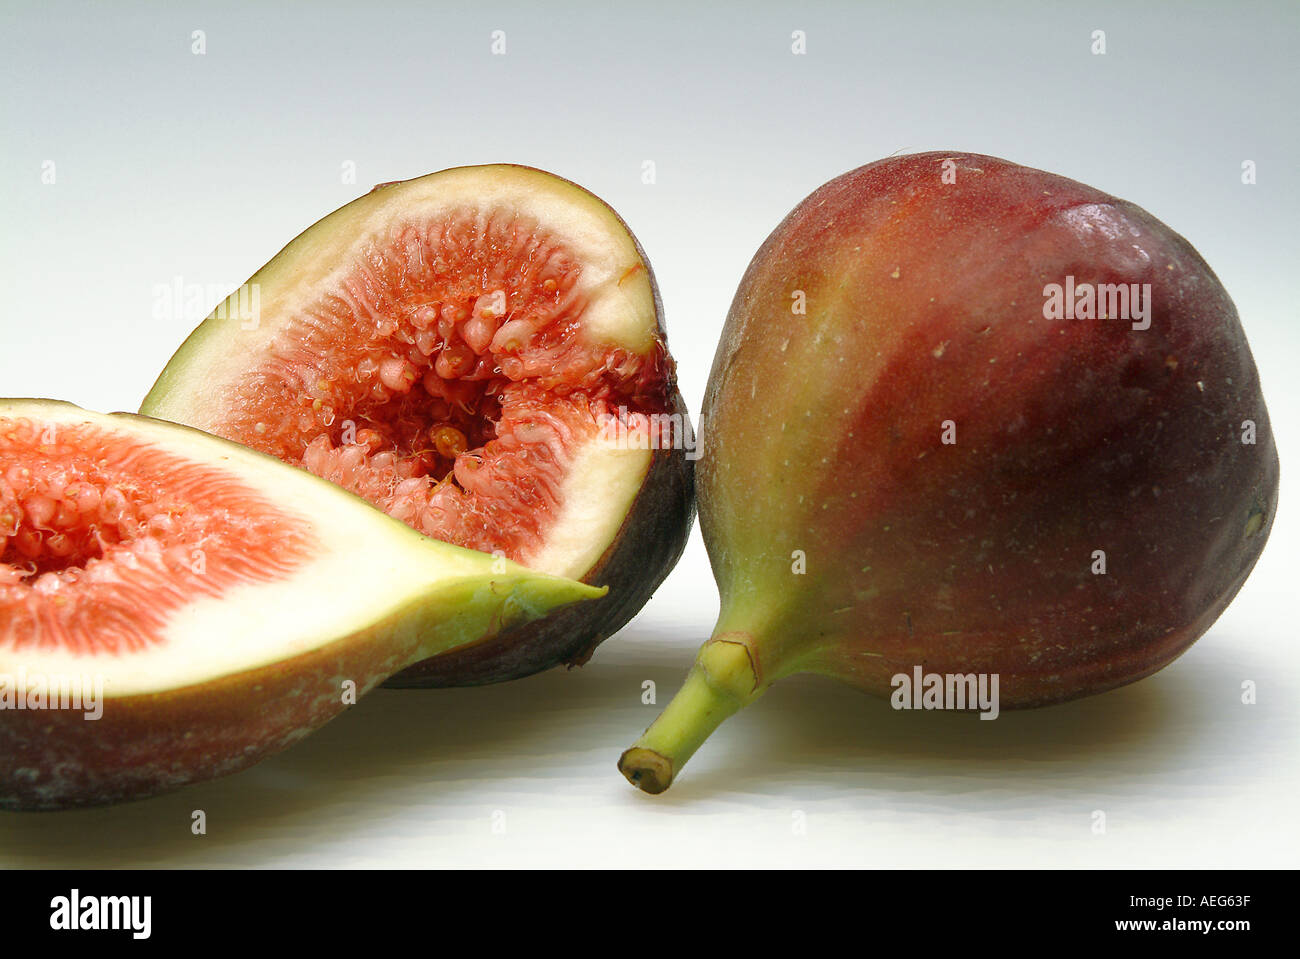 Obst Gemüse Feigen Feigen geschnitten offene halbe Stamm fleischig Essen Obst sonstige Hintergrundtextur Stockfoto